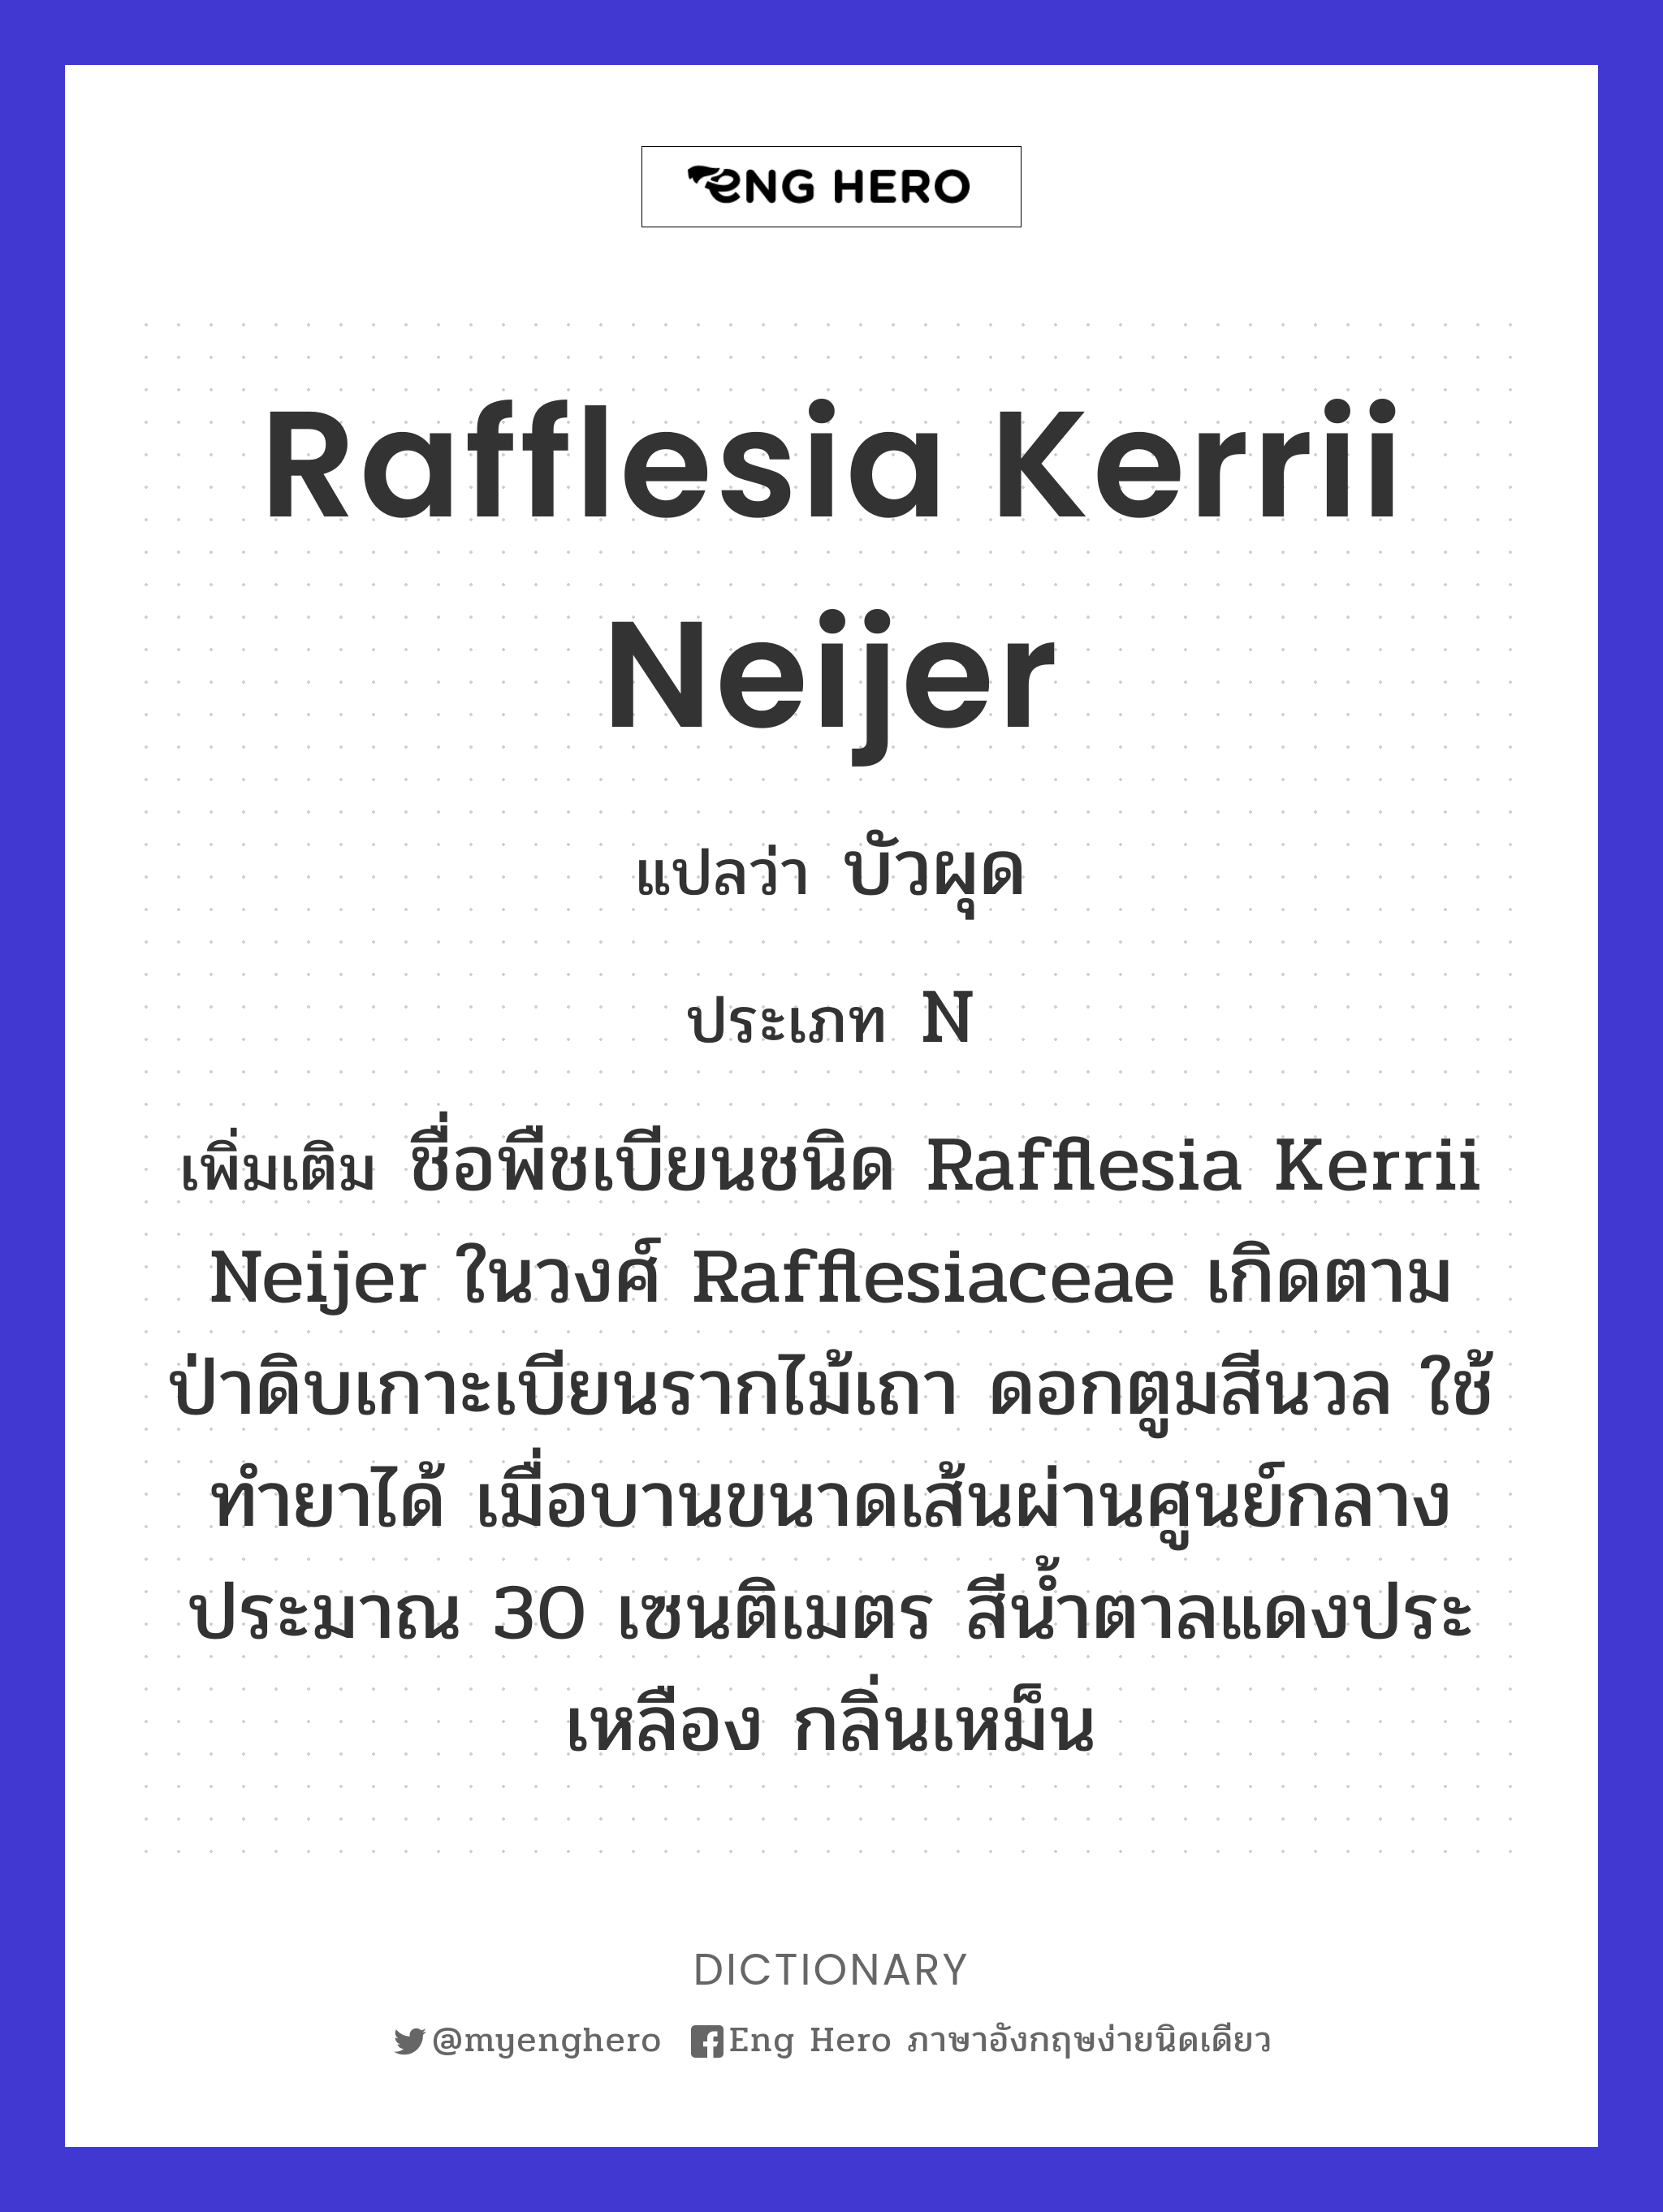 Rafflesia kerrii Neijer